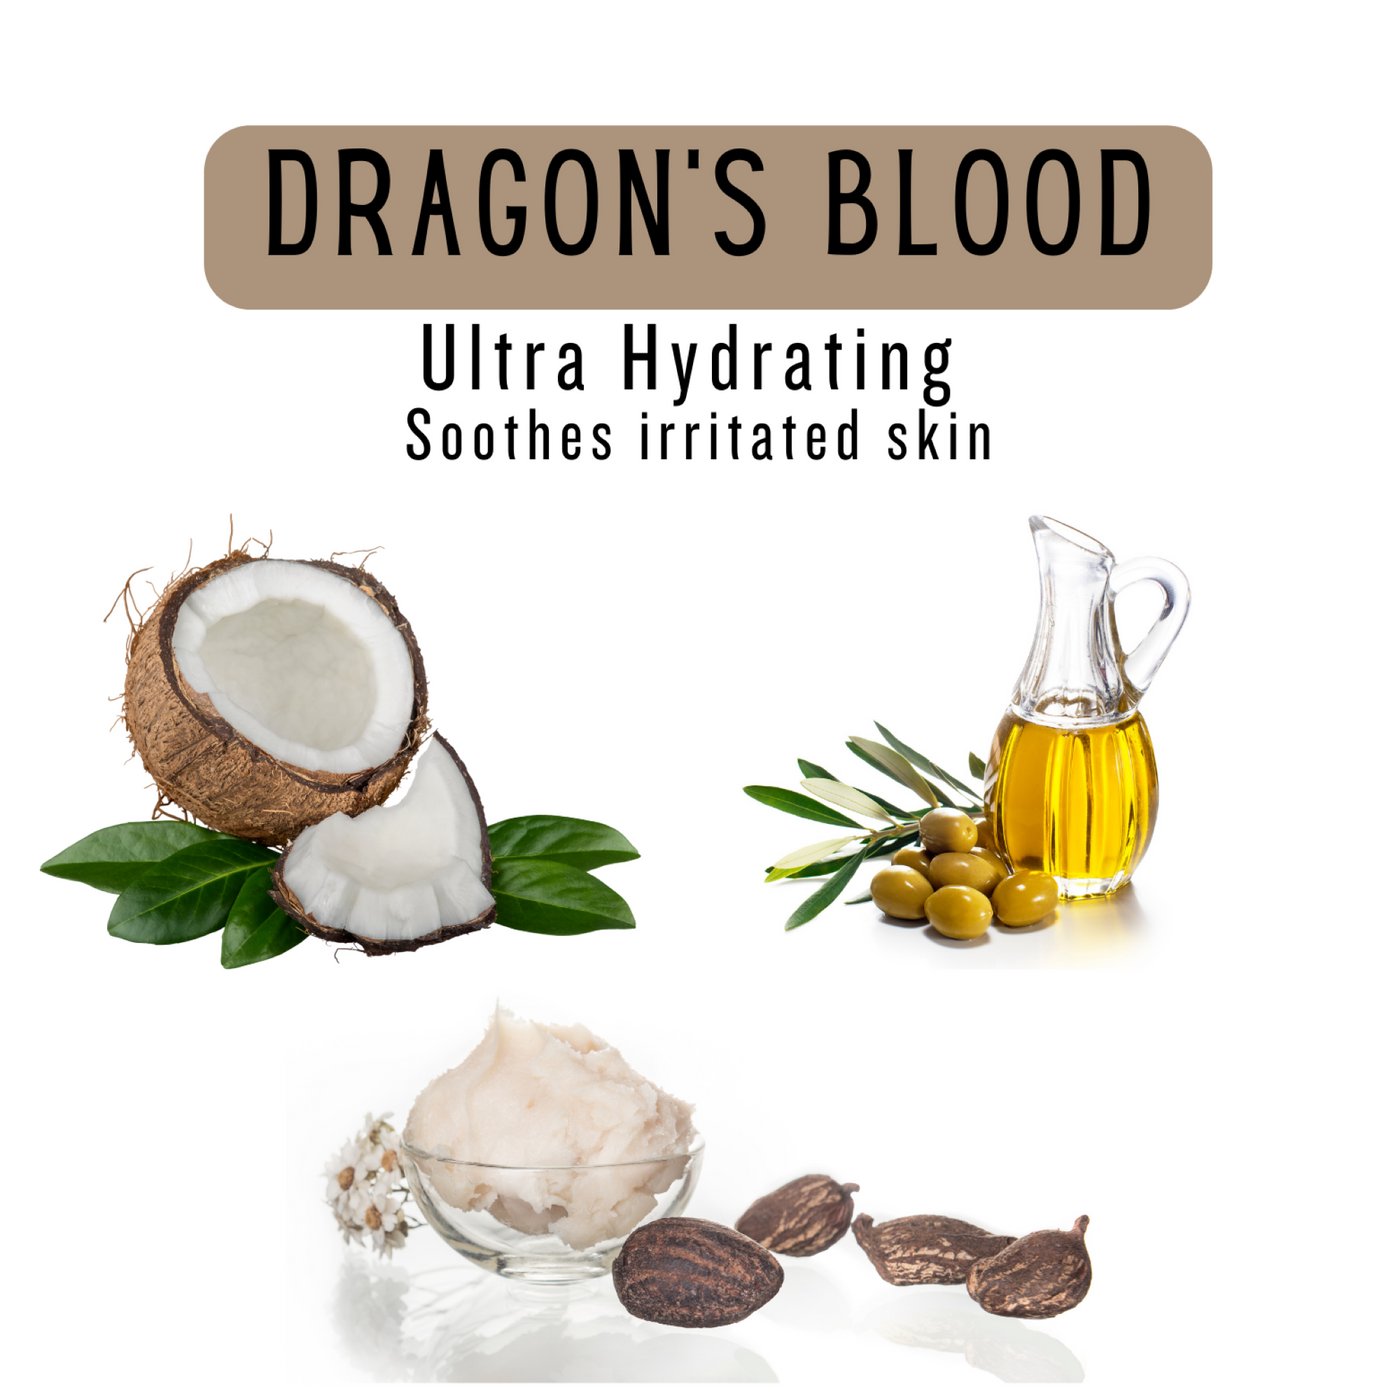 DRAGON'S BLOOD Exfoliating Scrub Soap Bar